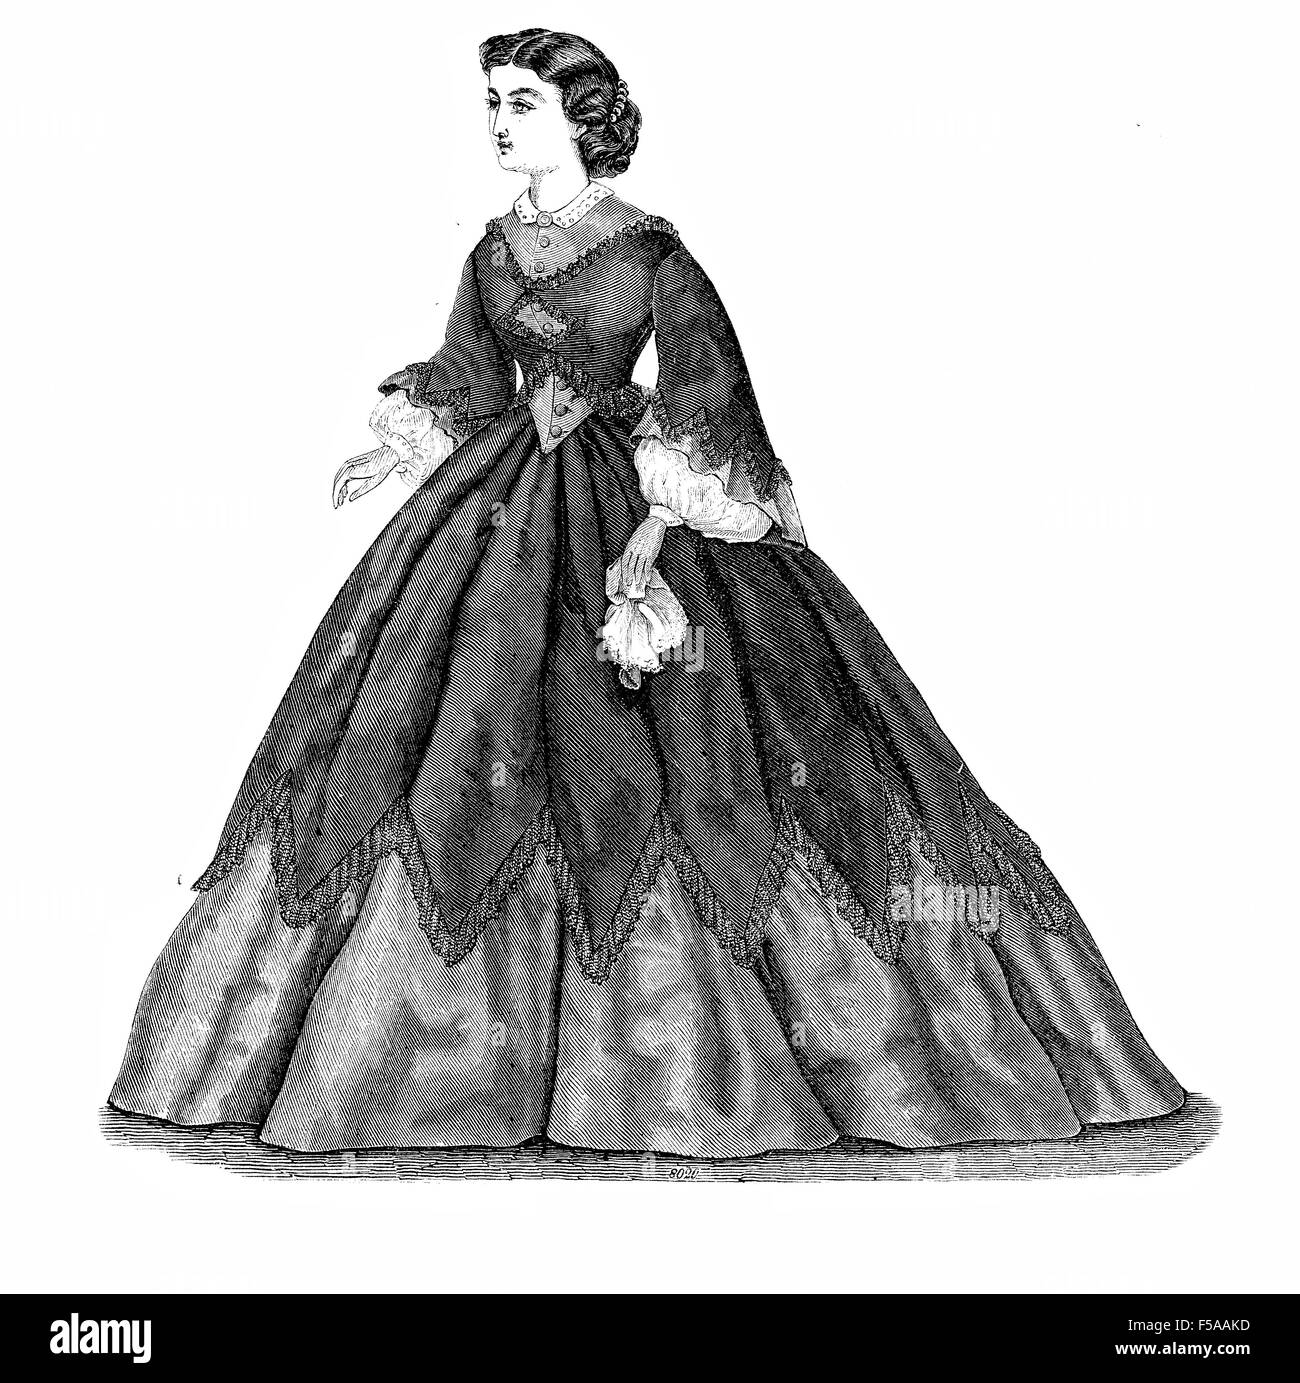 La mode vintage illustré, der Bazar, Berlin 1862, dame habillé pour une promenade Banque D'Images